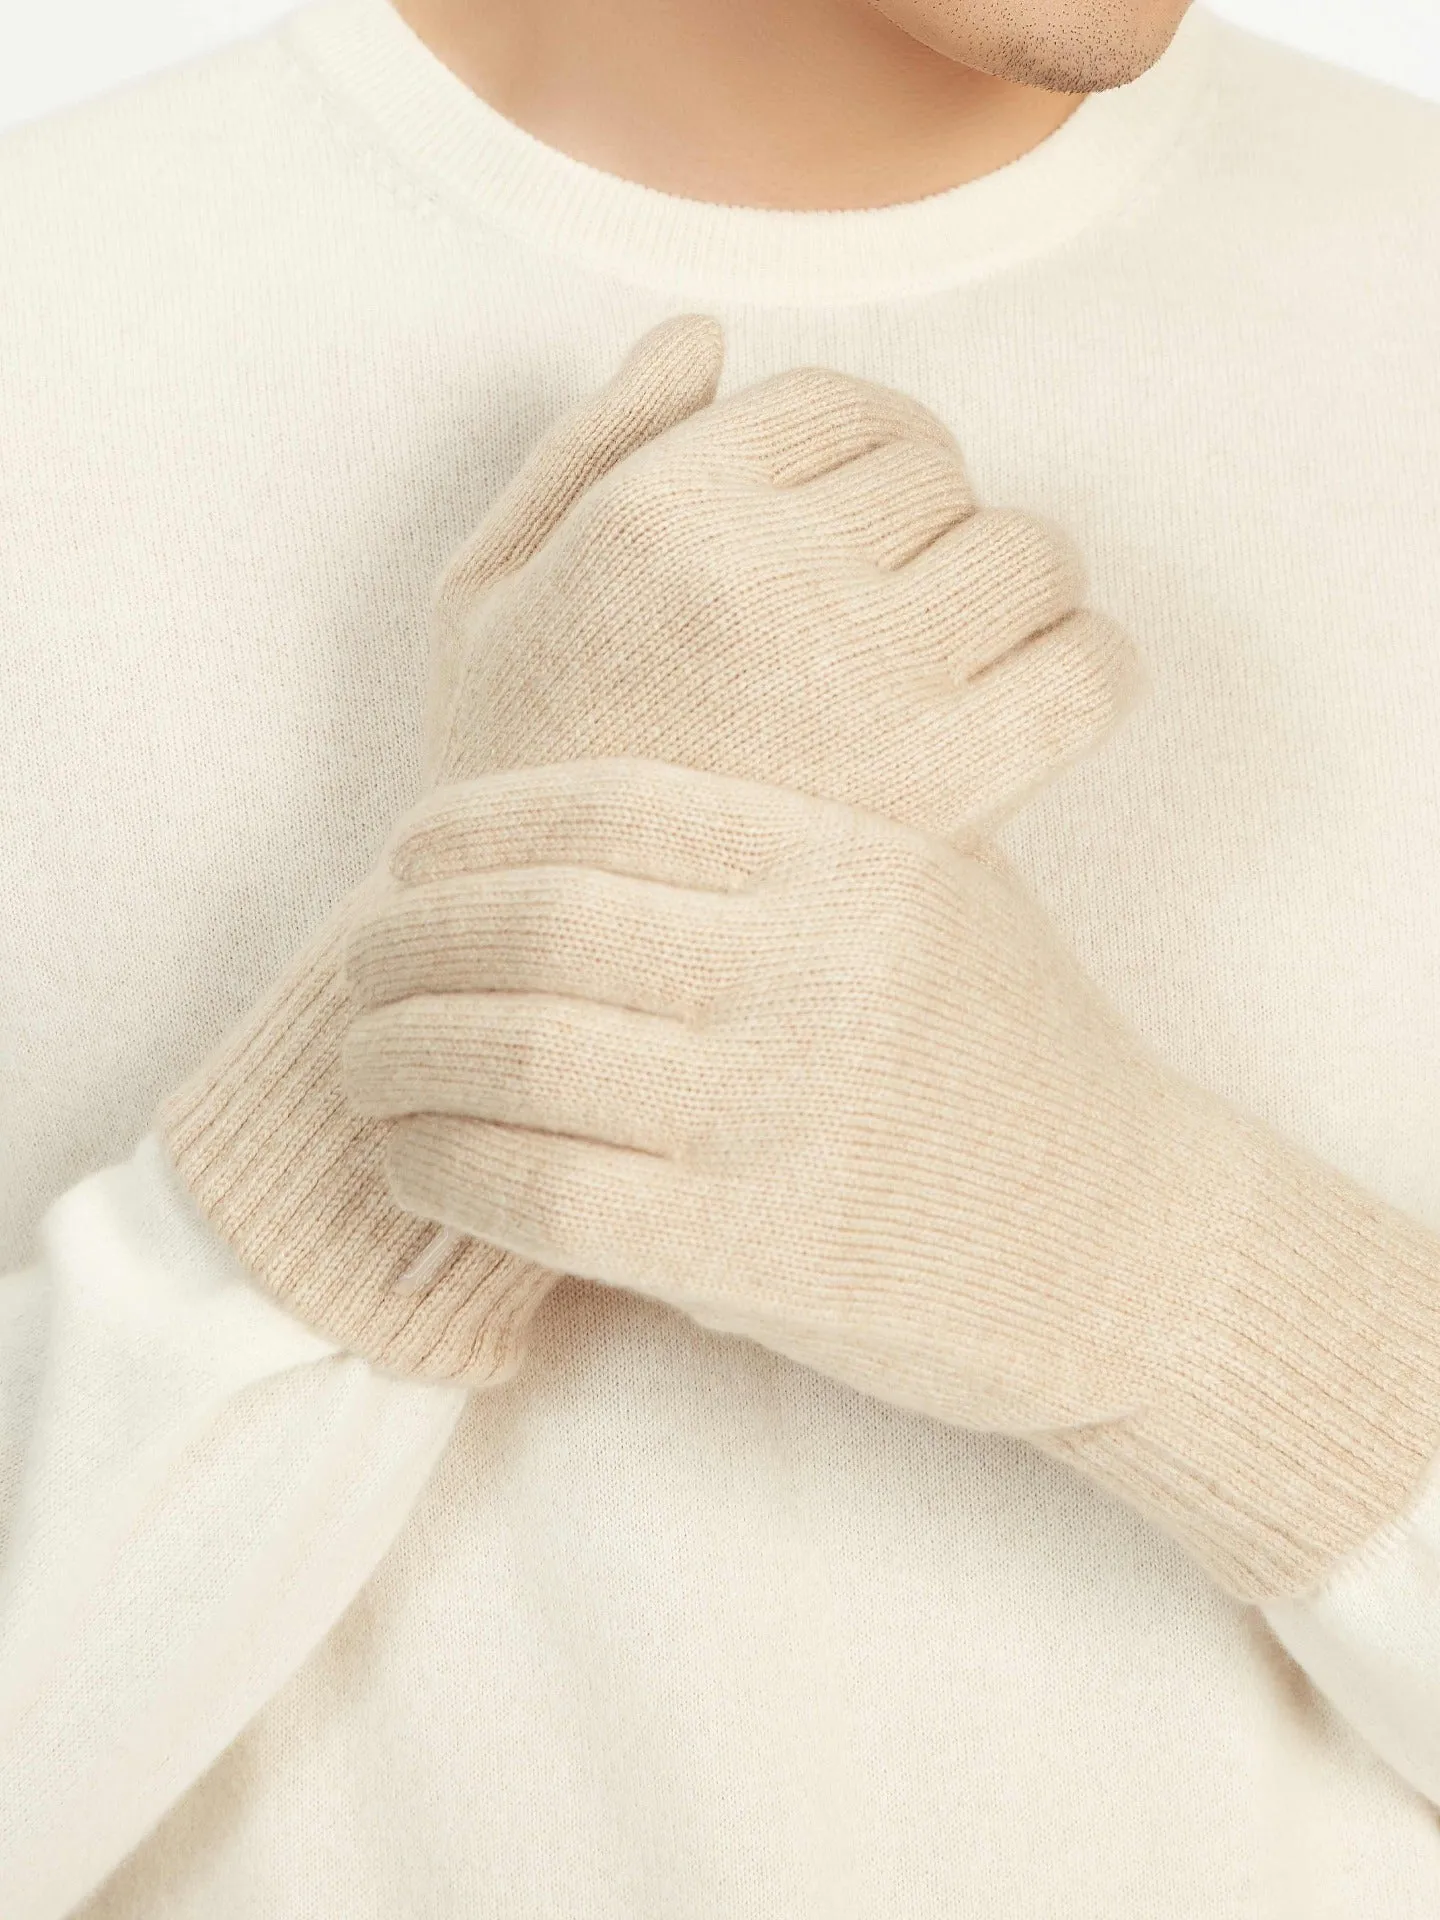 Men's Cashmere Gloves Beige- Gobi Cashmere